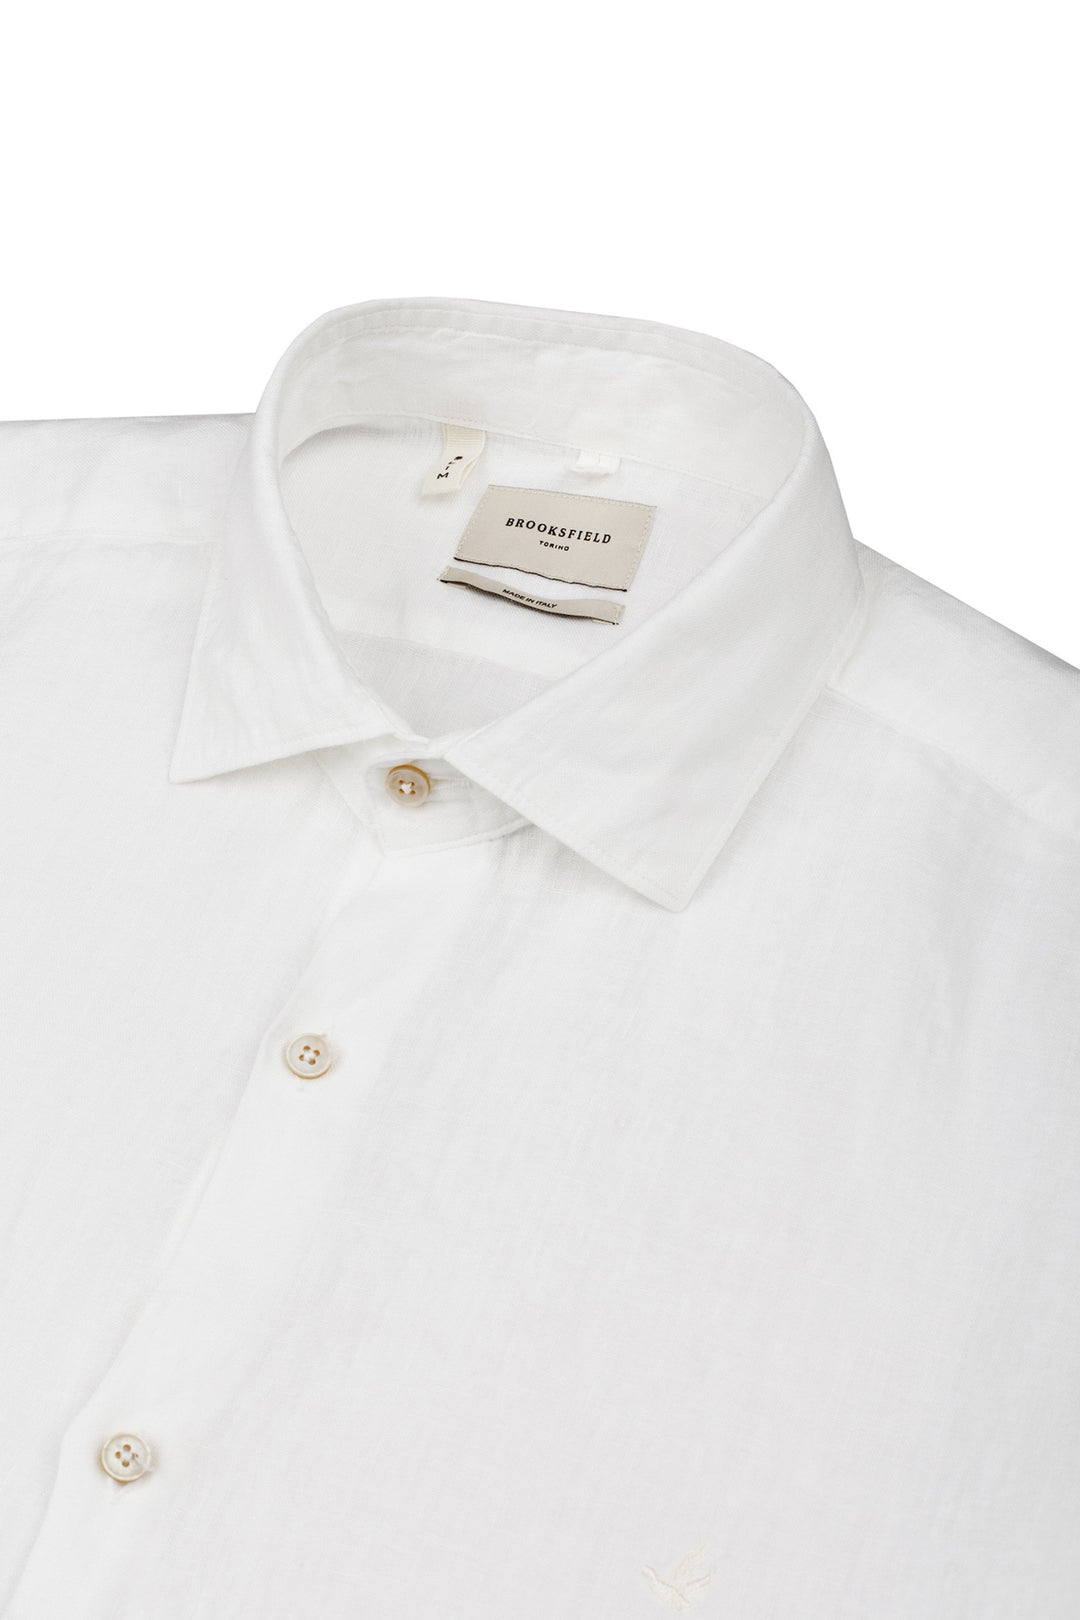 Brooksfield Camicia slim bianca in lino con collo francese - Mancinelli 1954